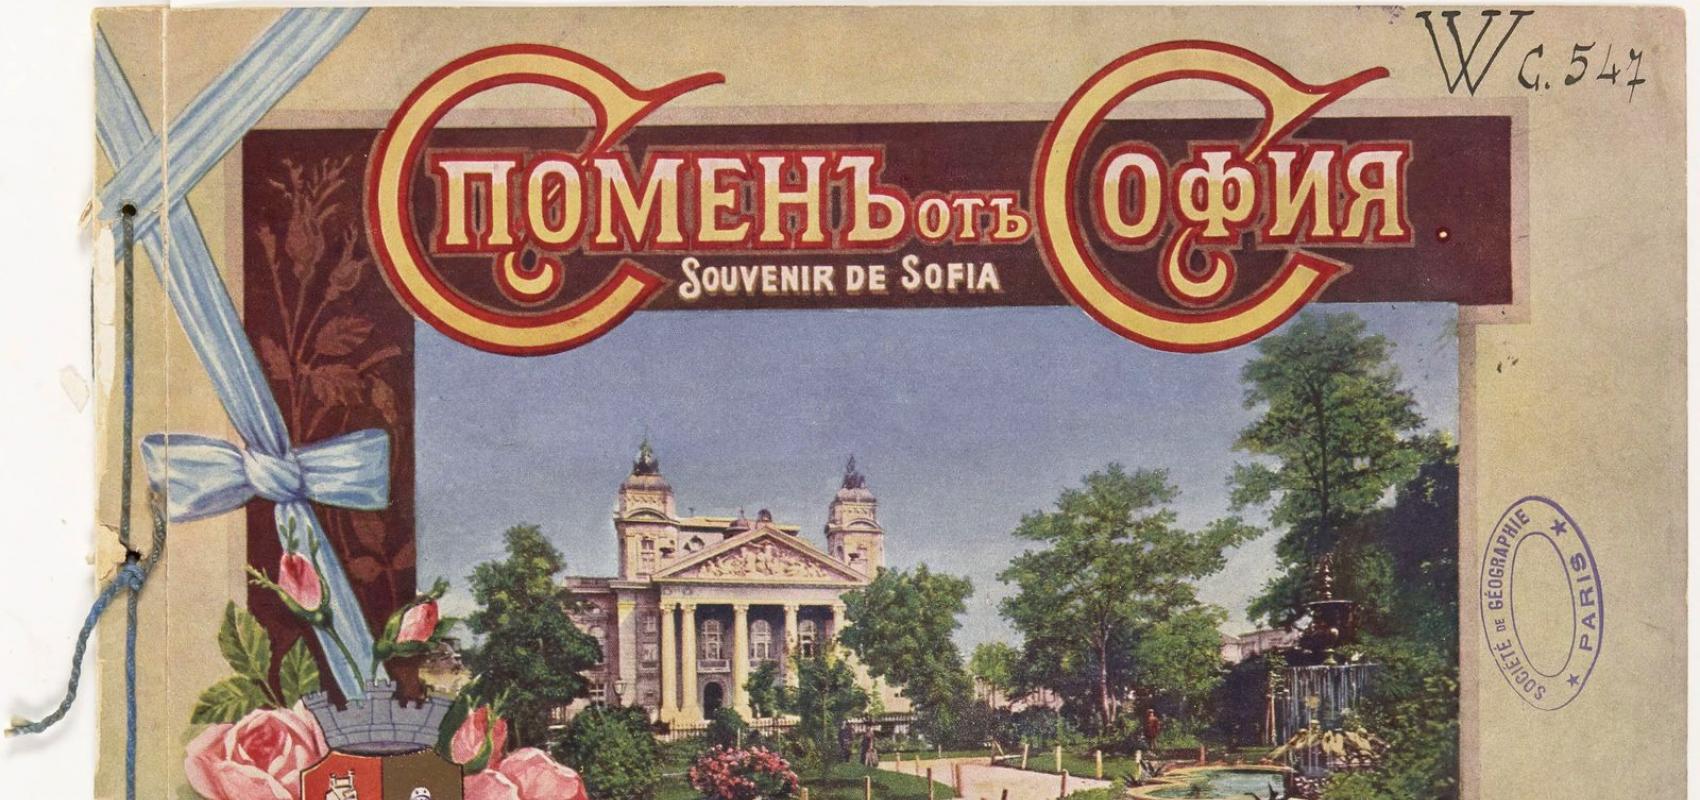 Spomen ot Sofia. Souvenir de Sofia - 1910 - BnF / Société de géographie